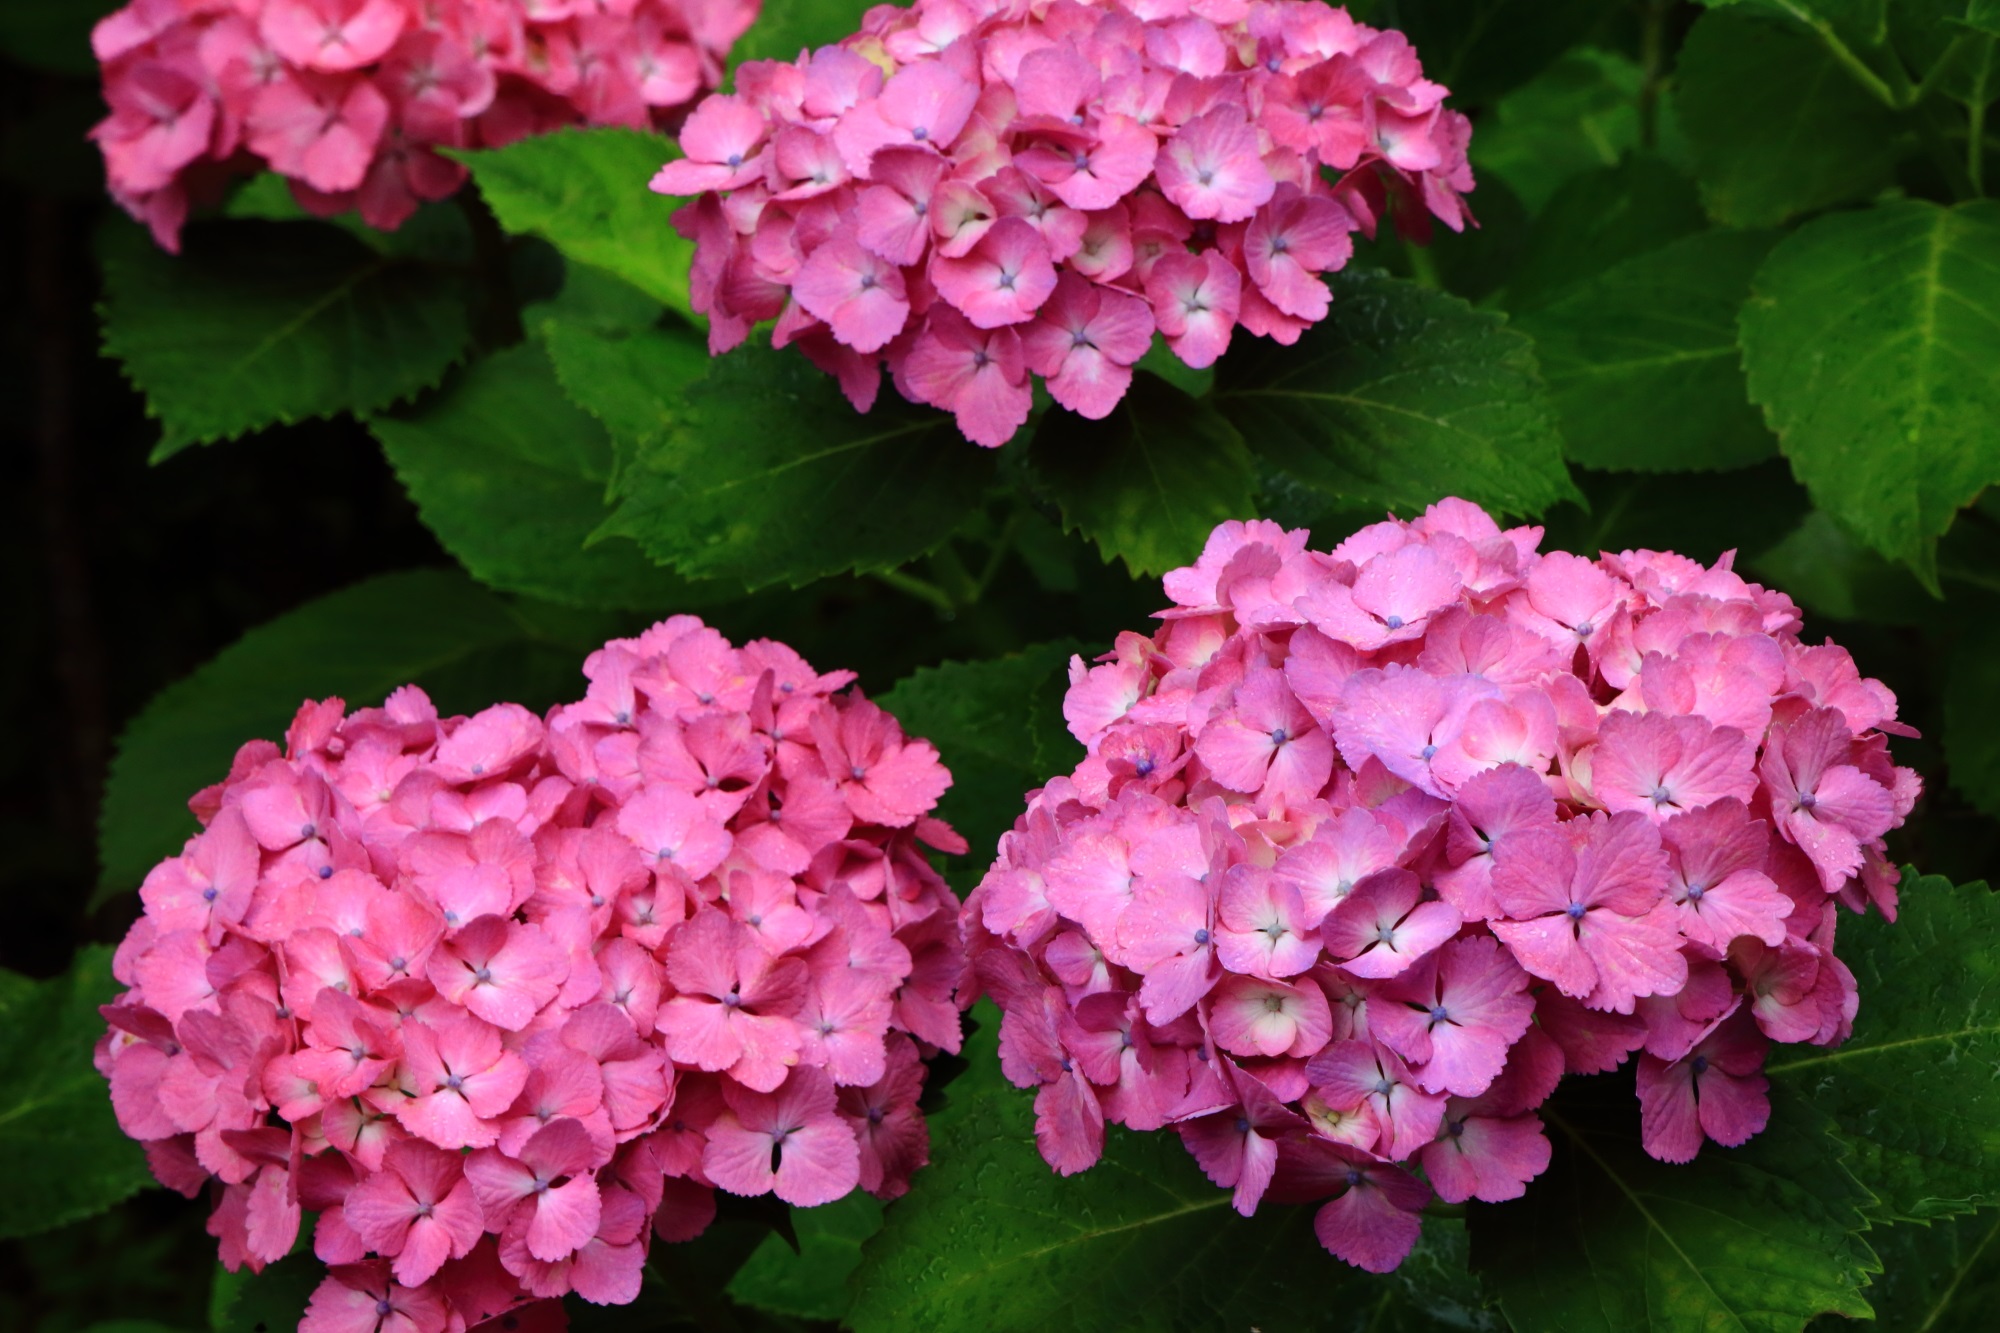 善峯寺の鮮やかなピンクのオーソドックスな紫陽花